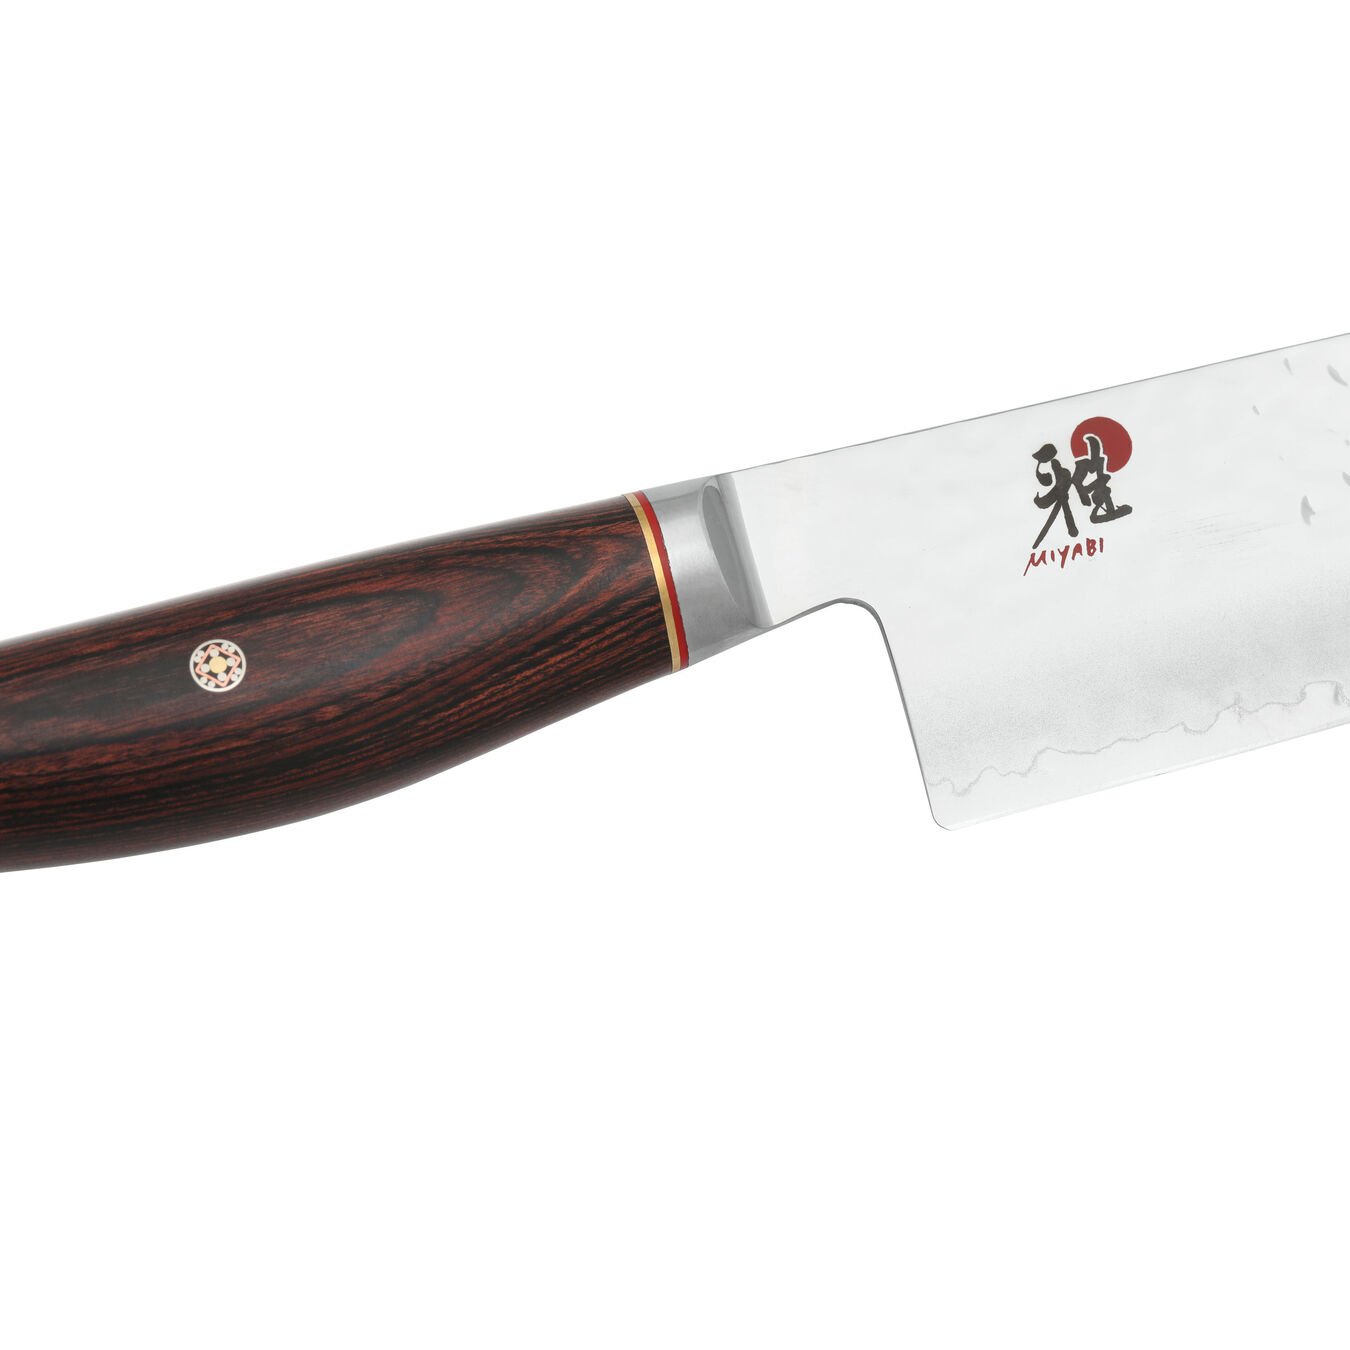 3.5-inch Pakka Wood Paring Knife,,large 5